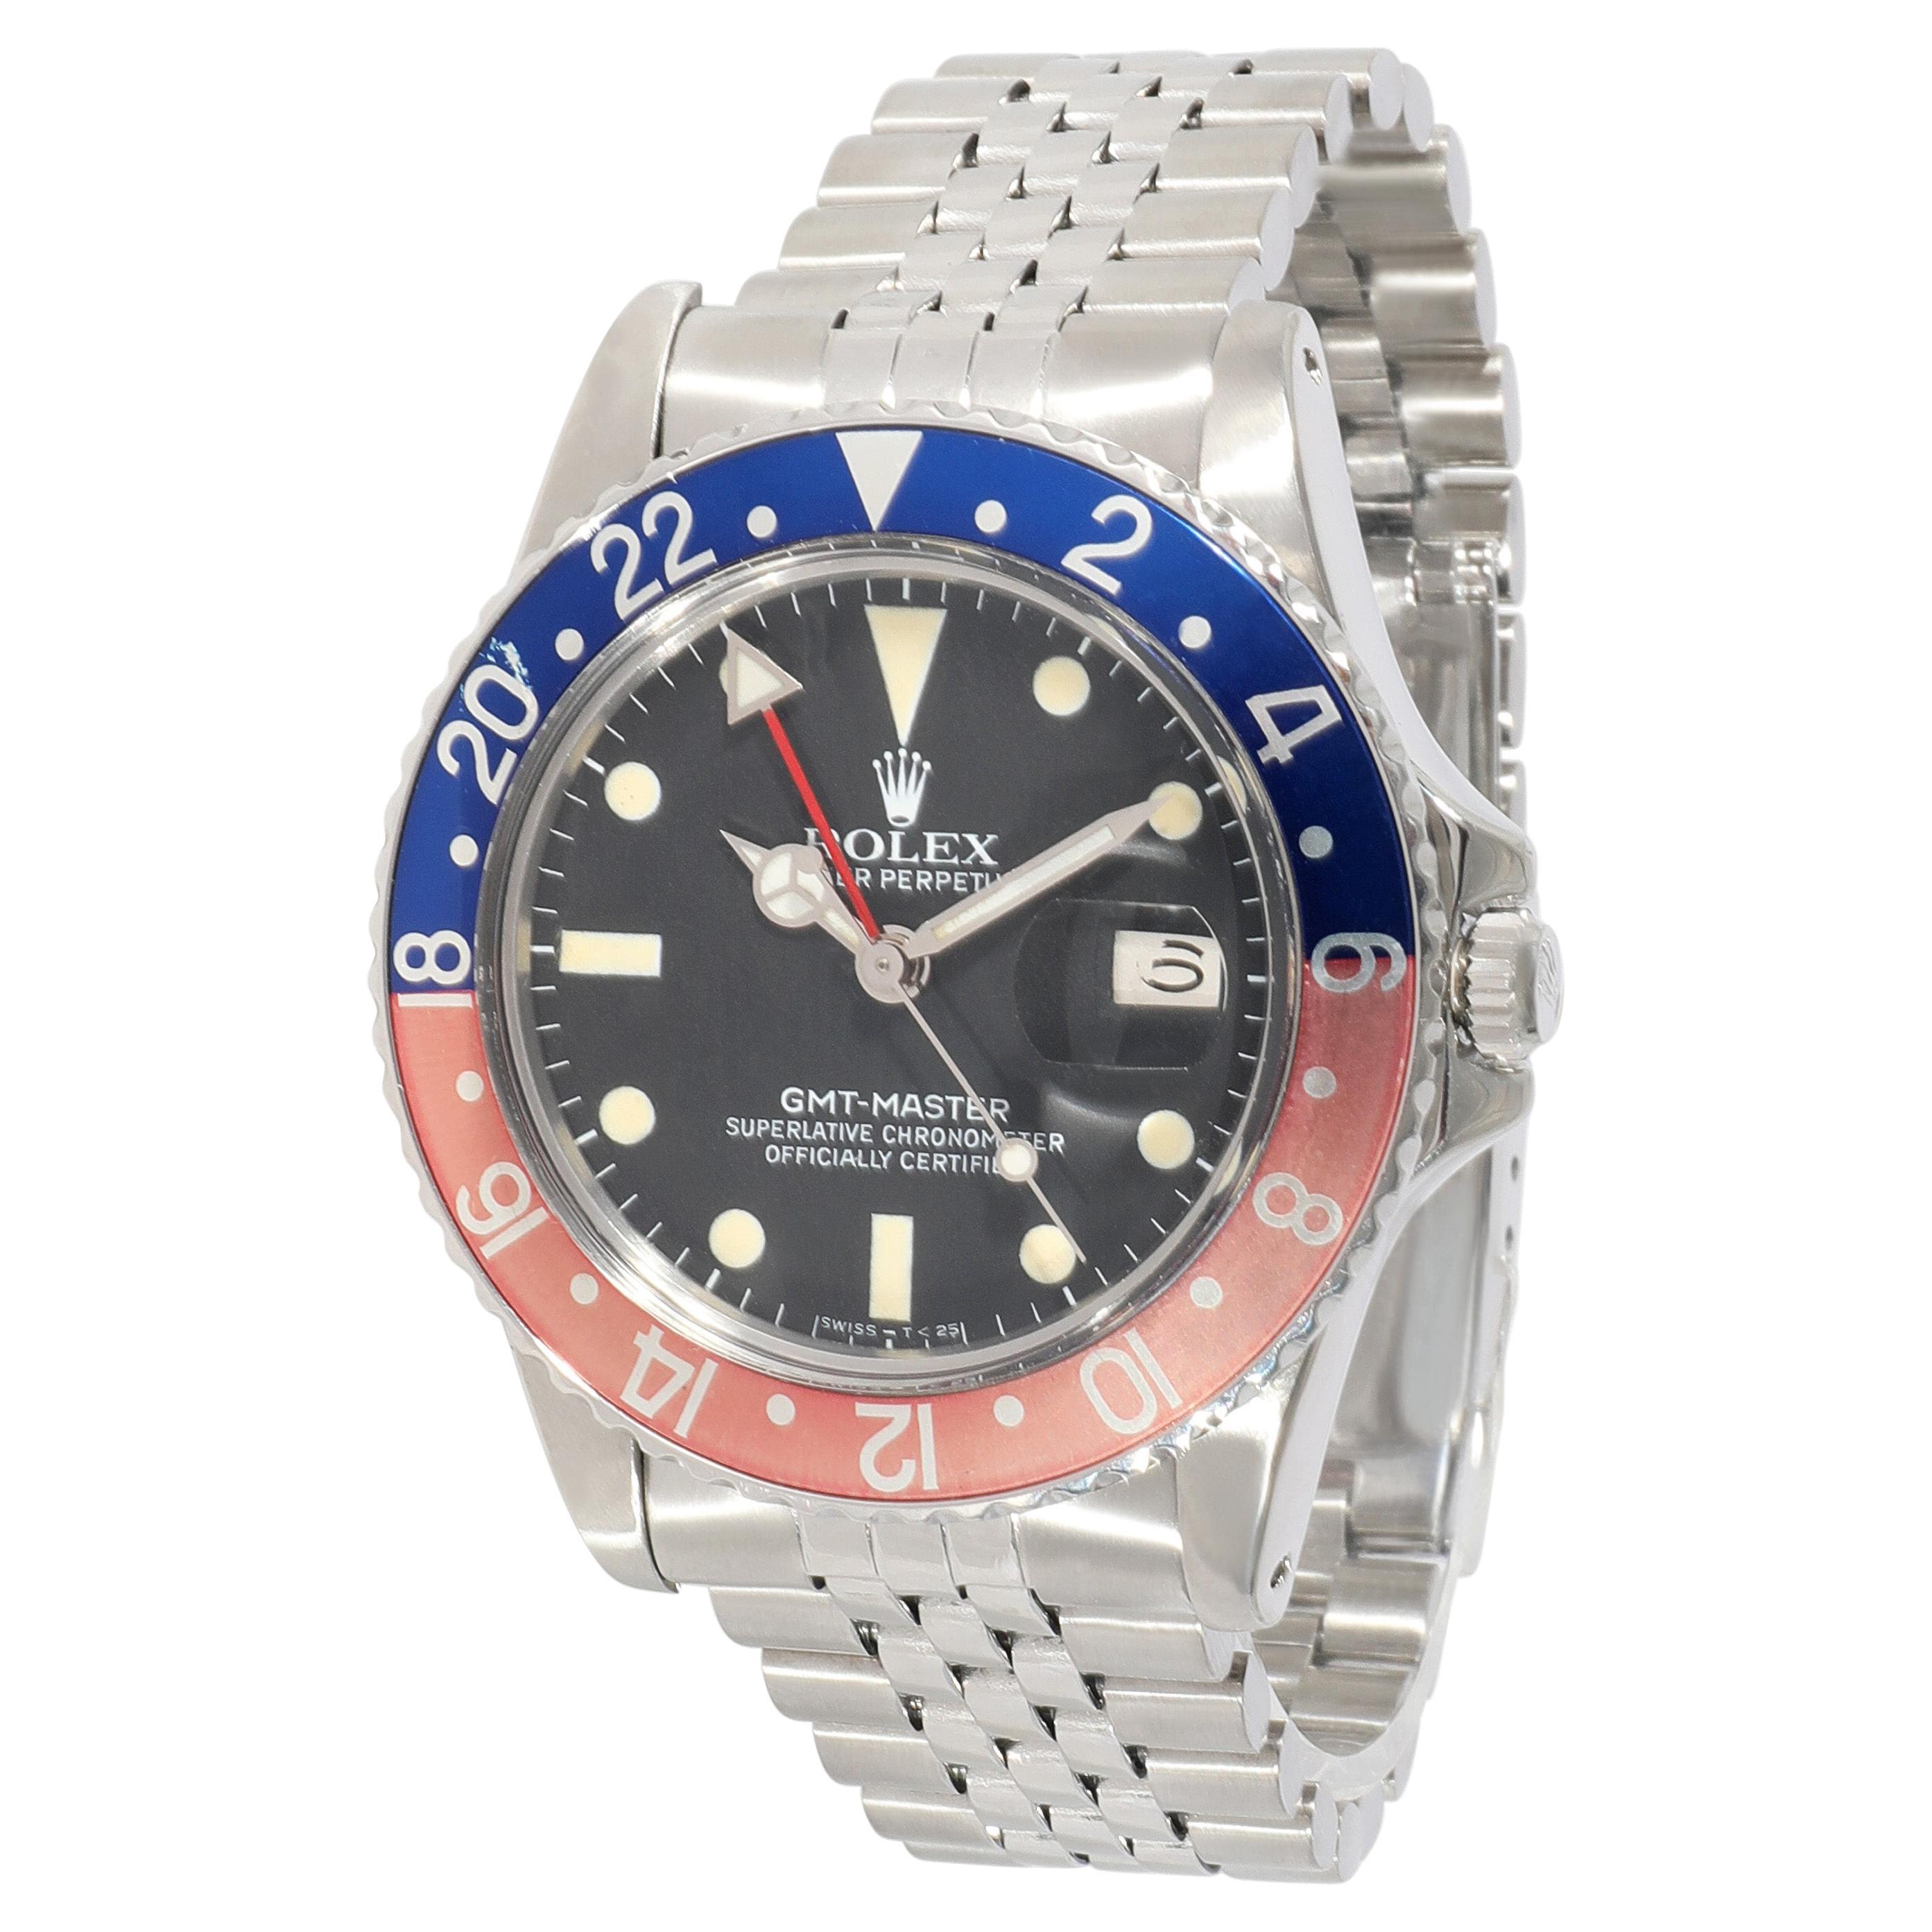 Rolex GMT-Master 16750 Men's Watch in Stainless Steel